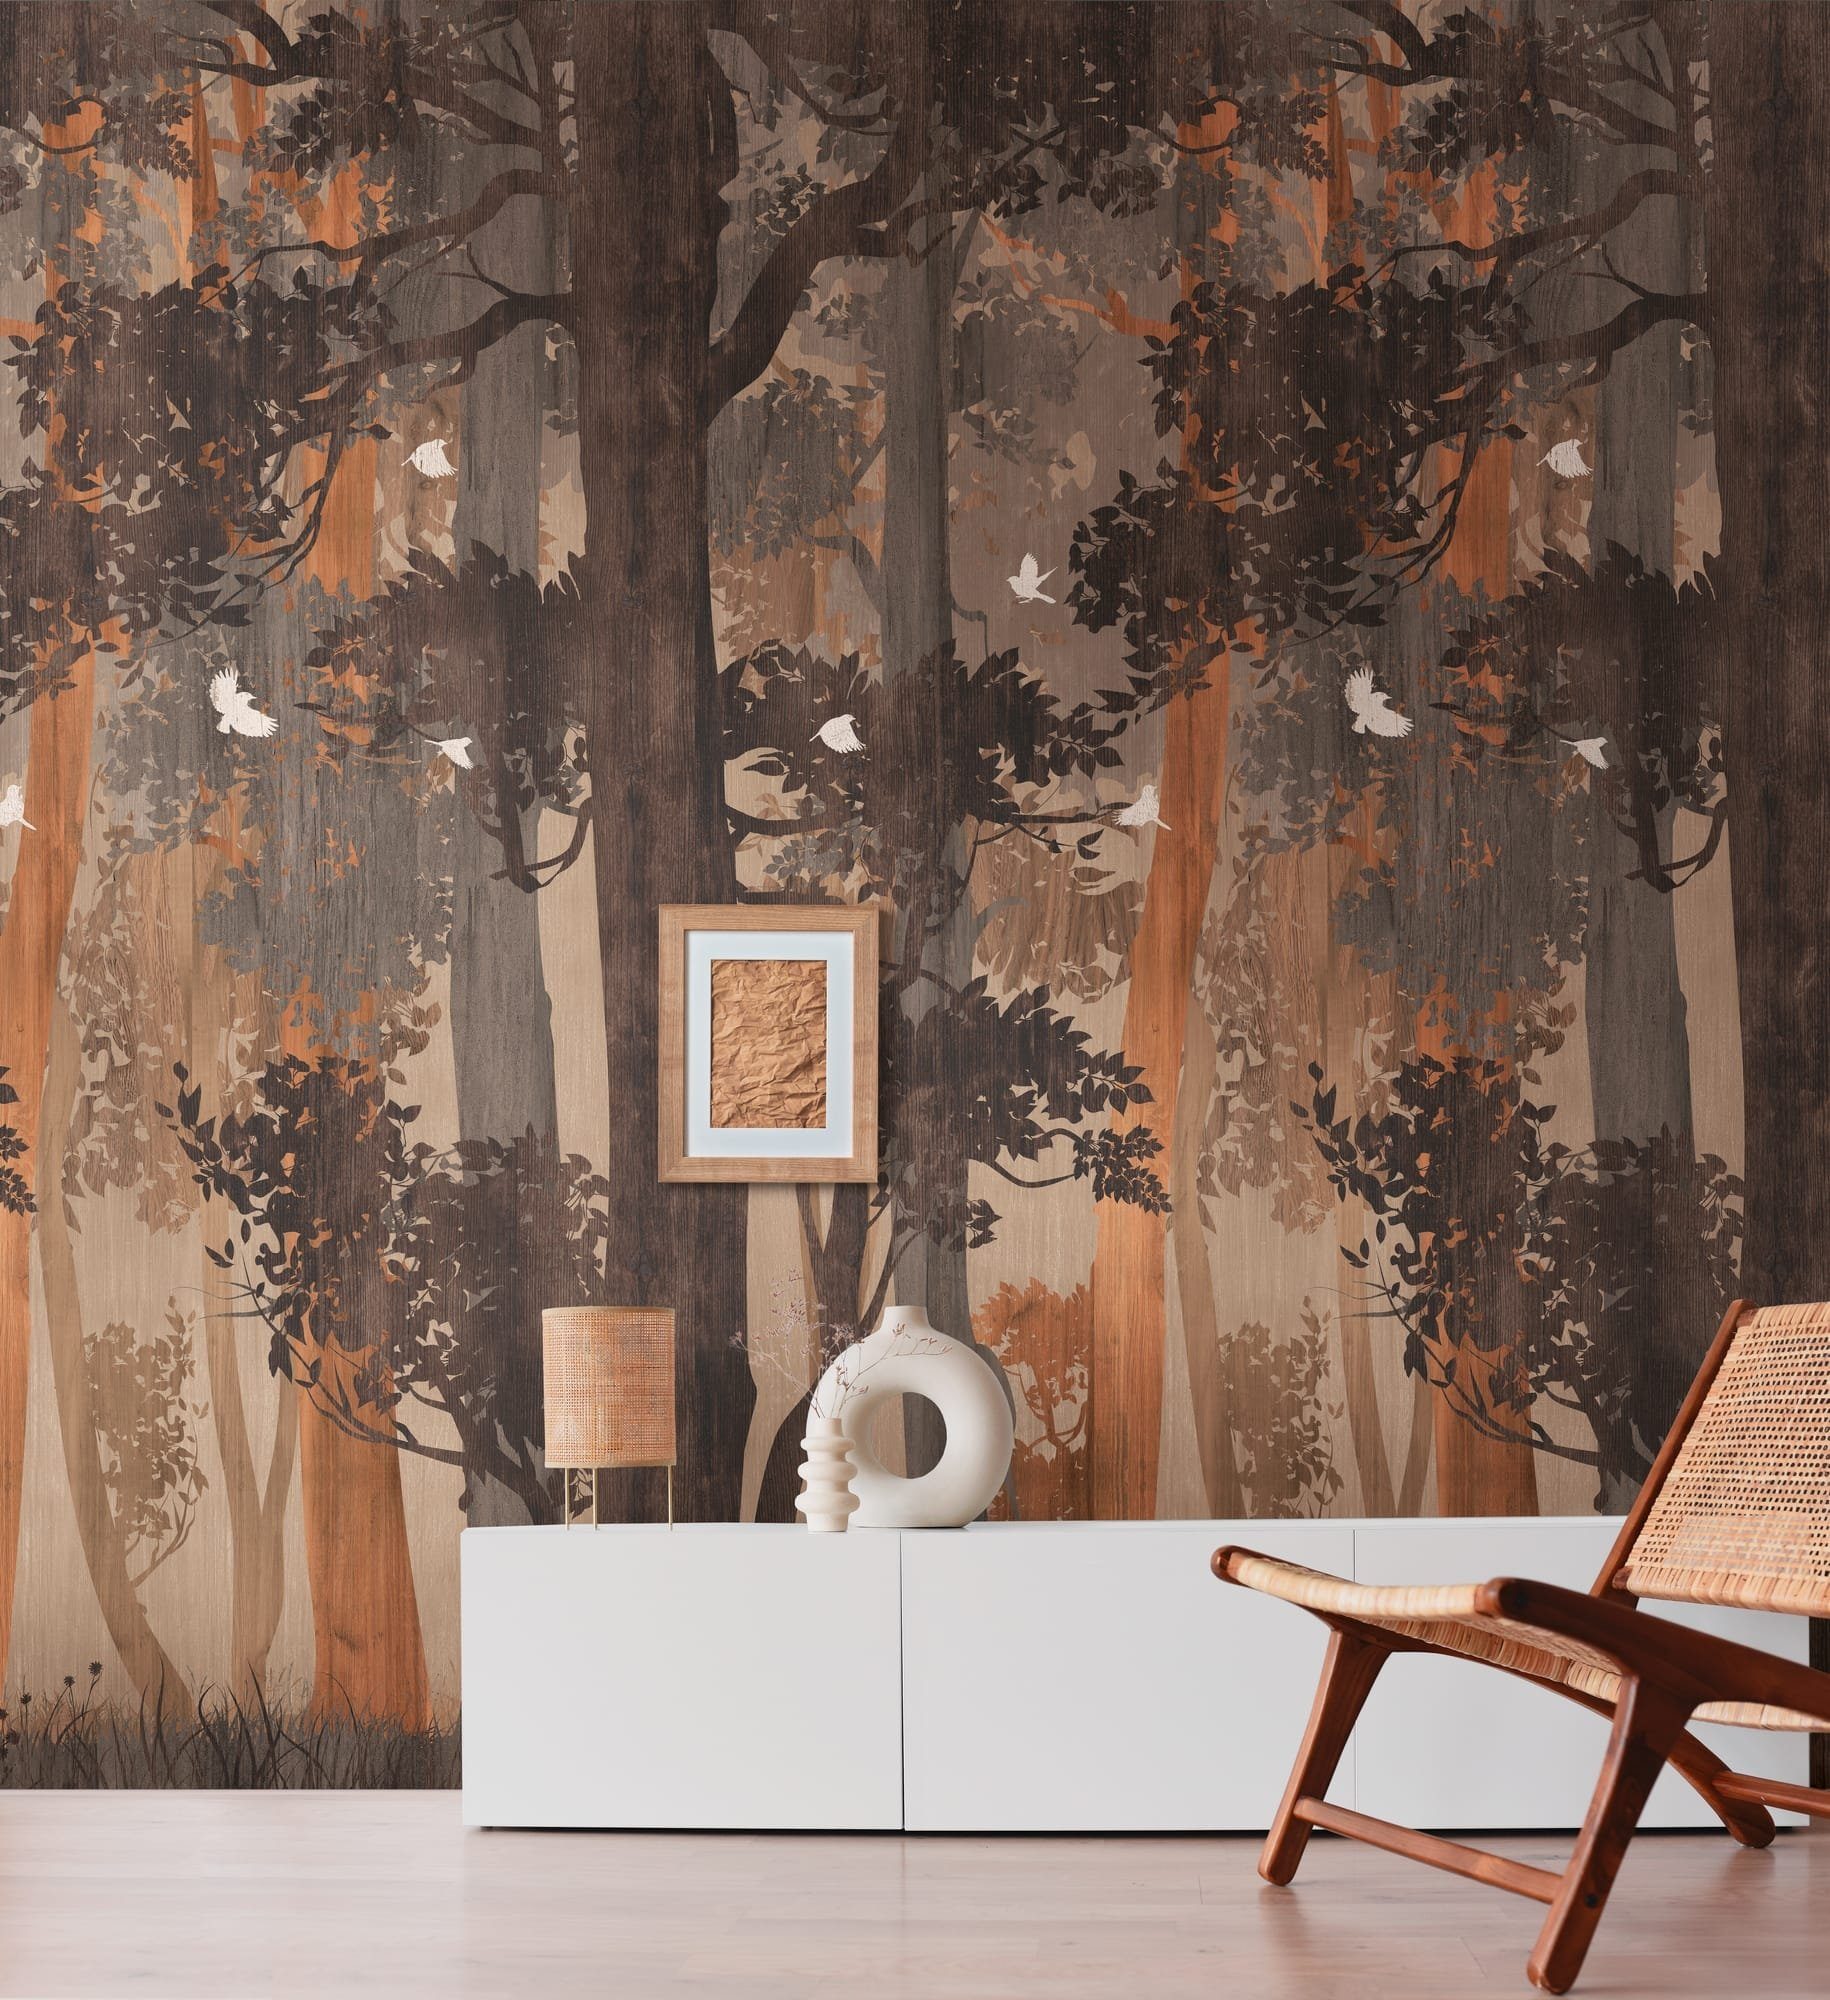 Newroom Vliestapete, [ 2,8 x 1,59 m ] großzügiges Motiv - kein  wiederkehrendes Muster - nahtlos große Flächen möglich - Fototapete  Wandbild Wald Bäume Vögel Made in Germany